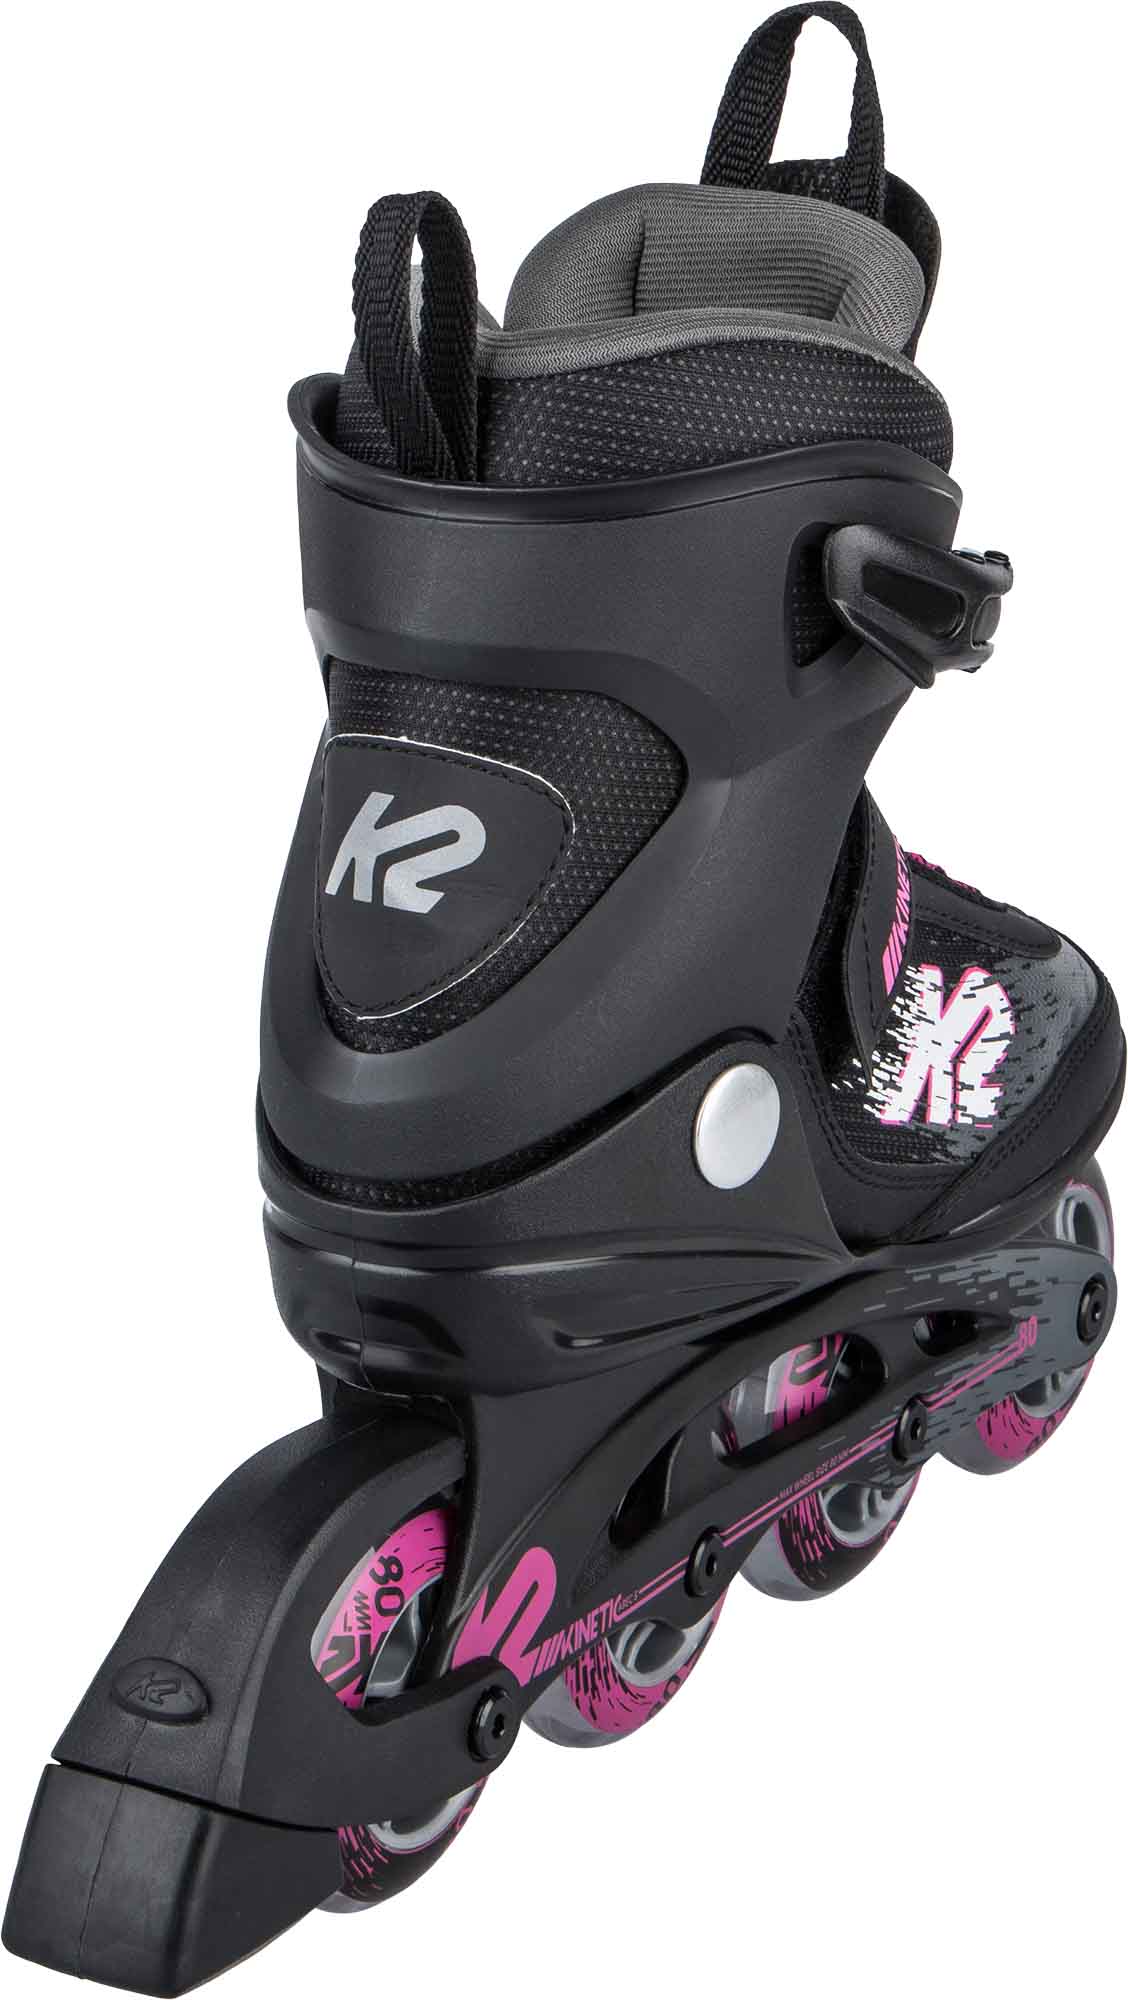 Women’s roller skates